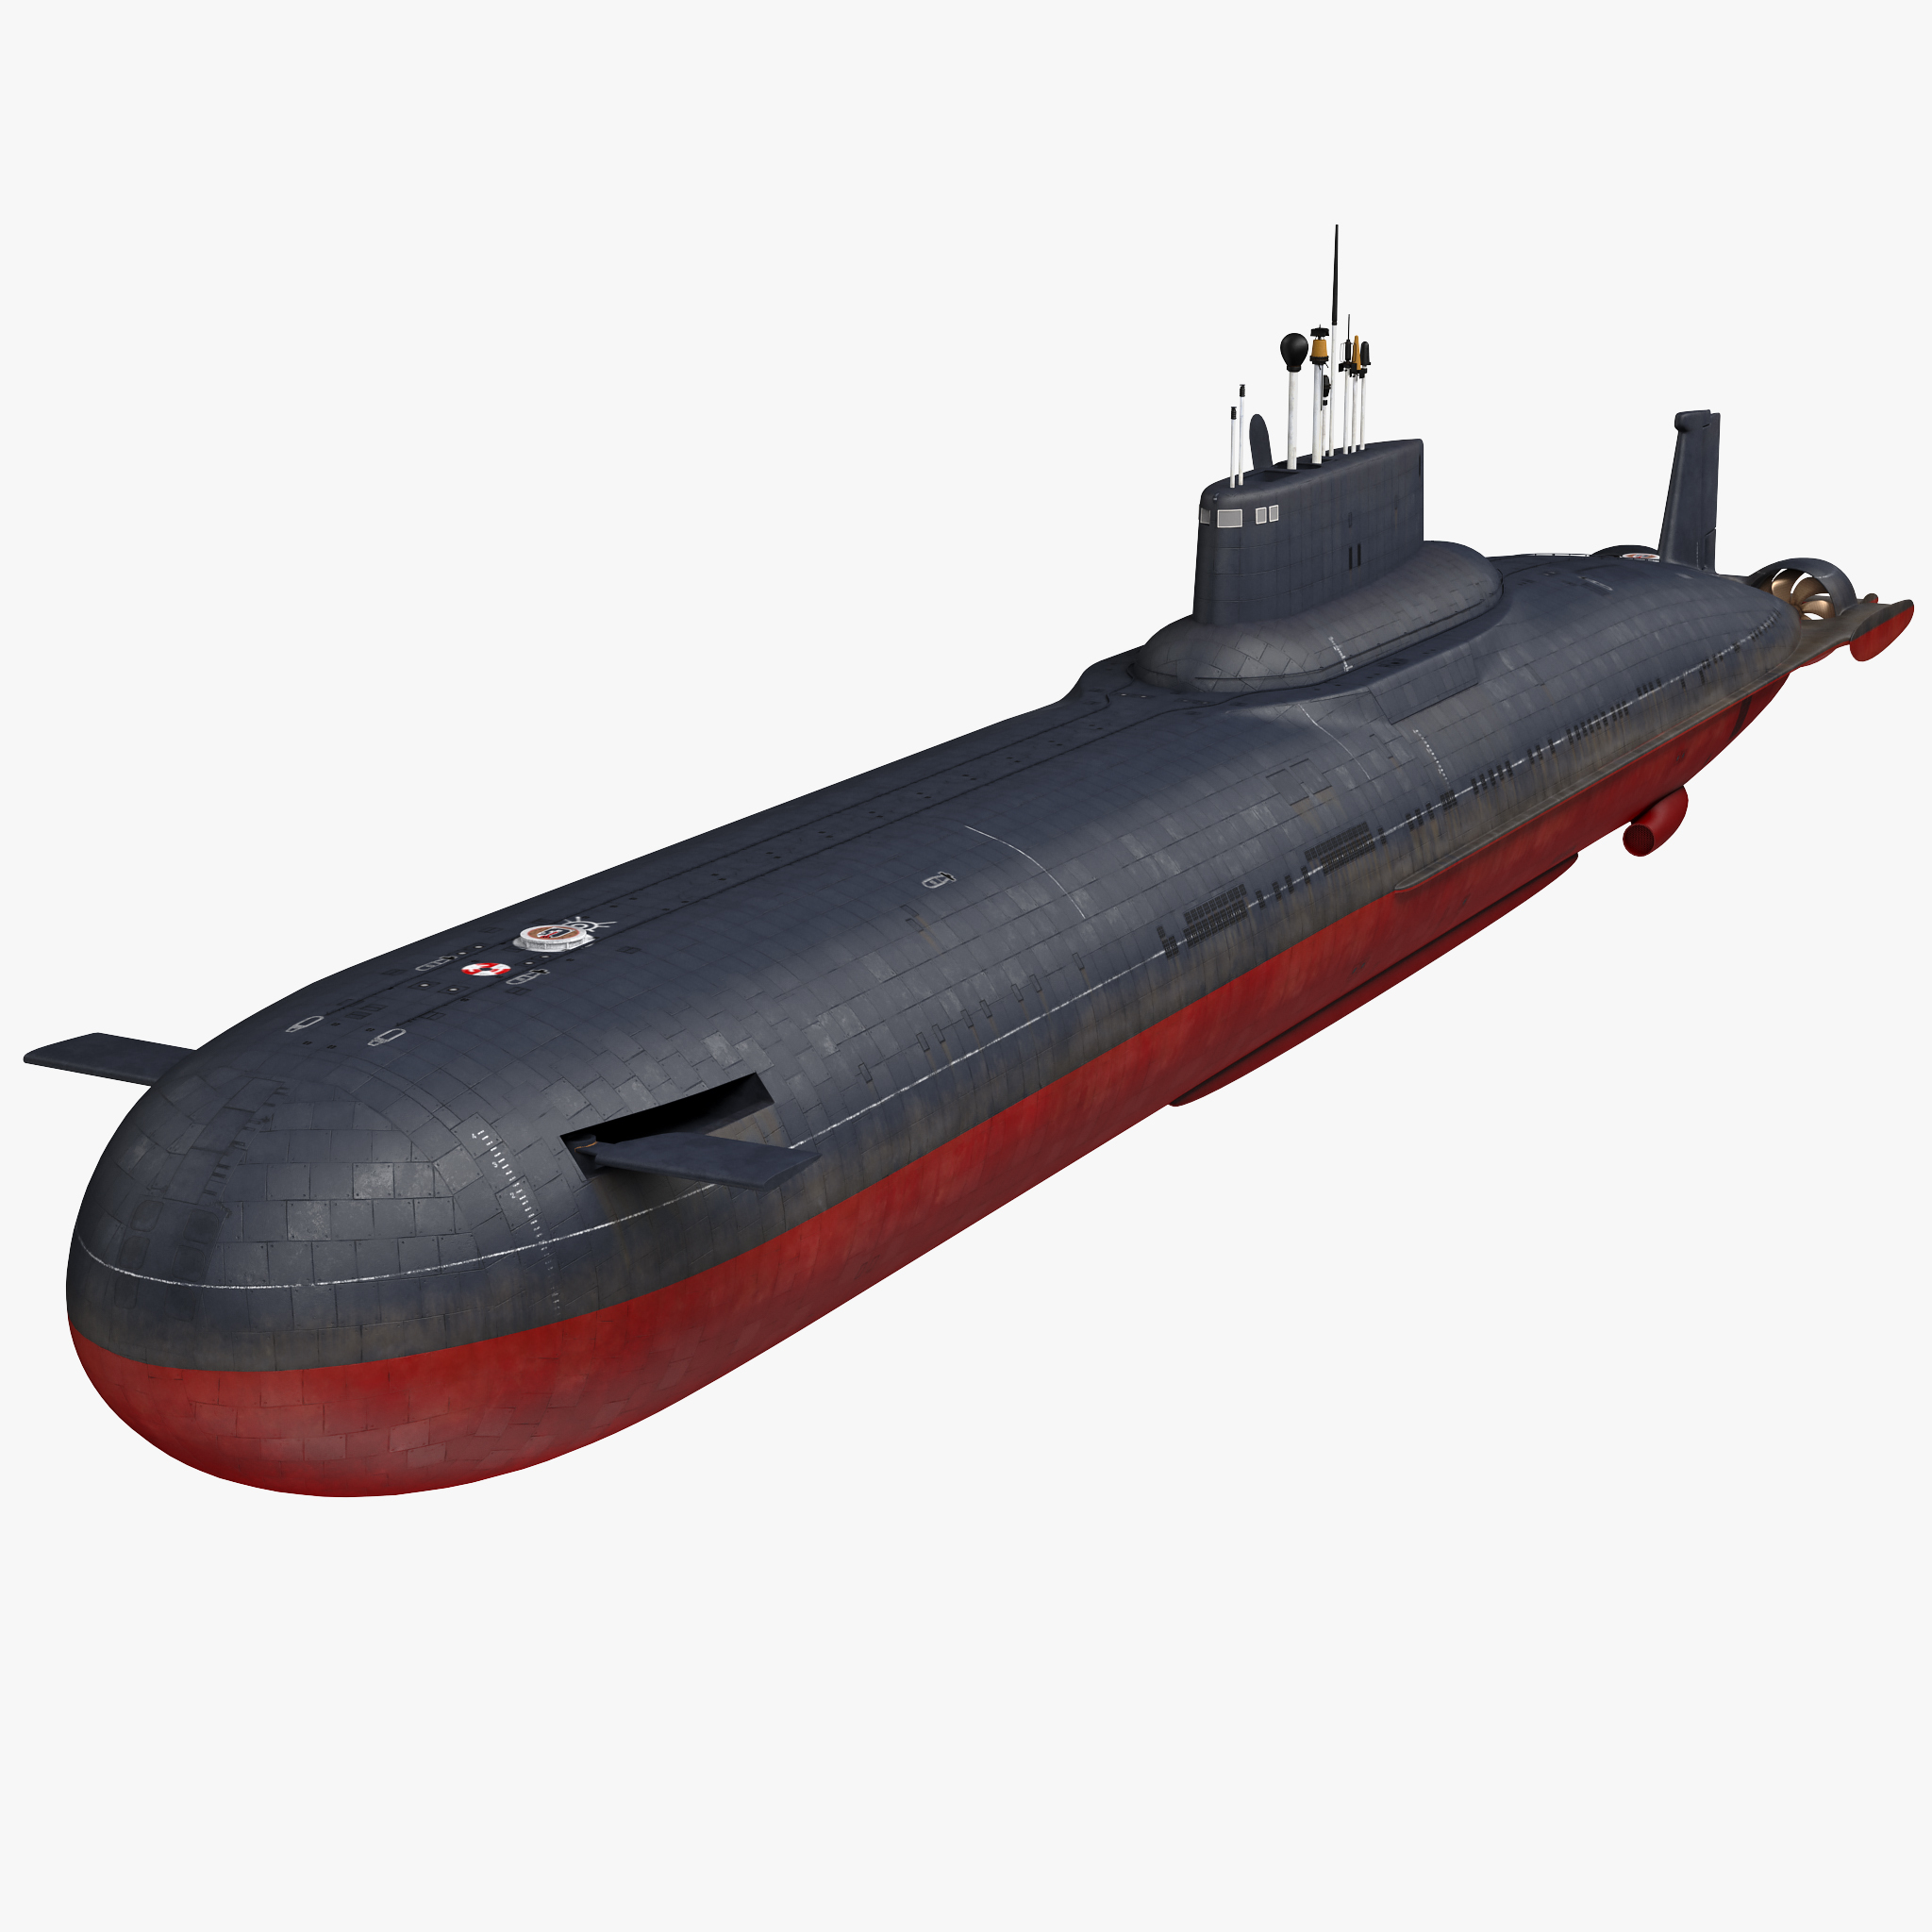 typhoon class submarine model kit